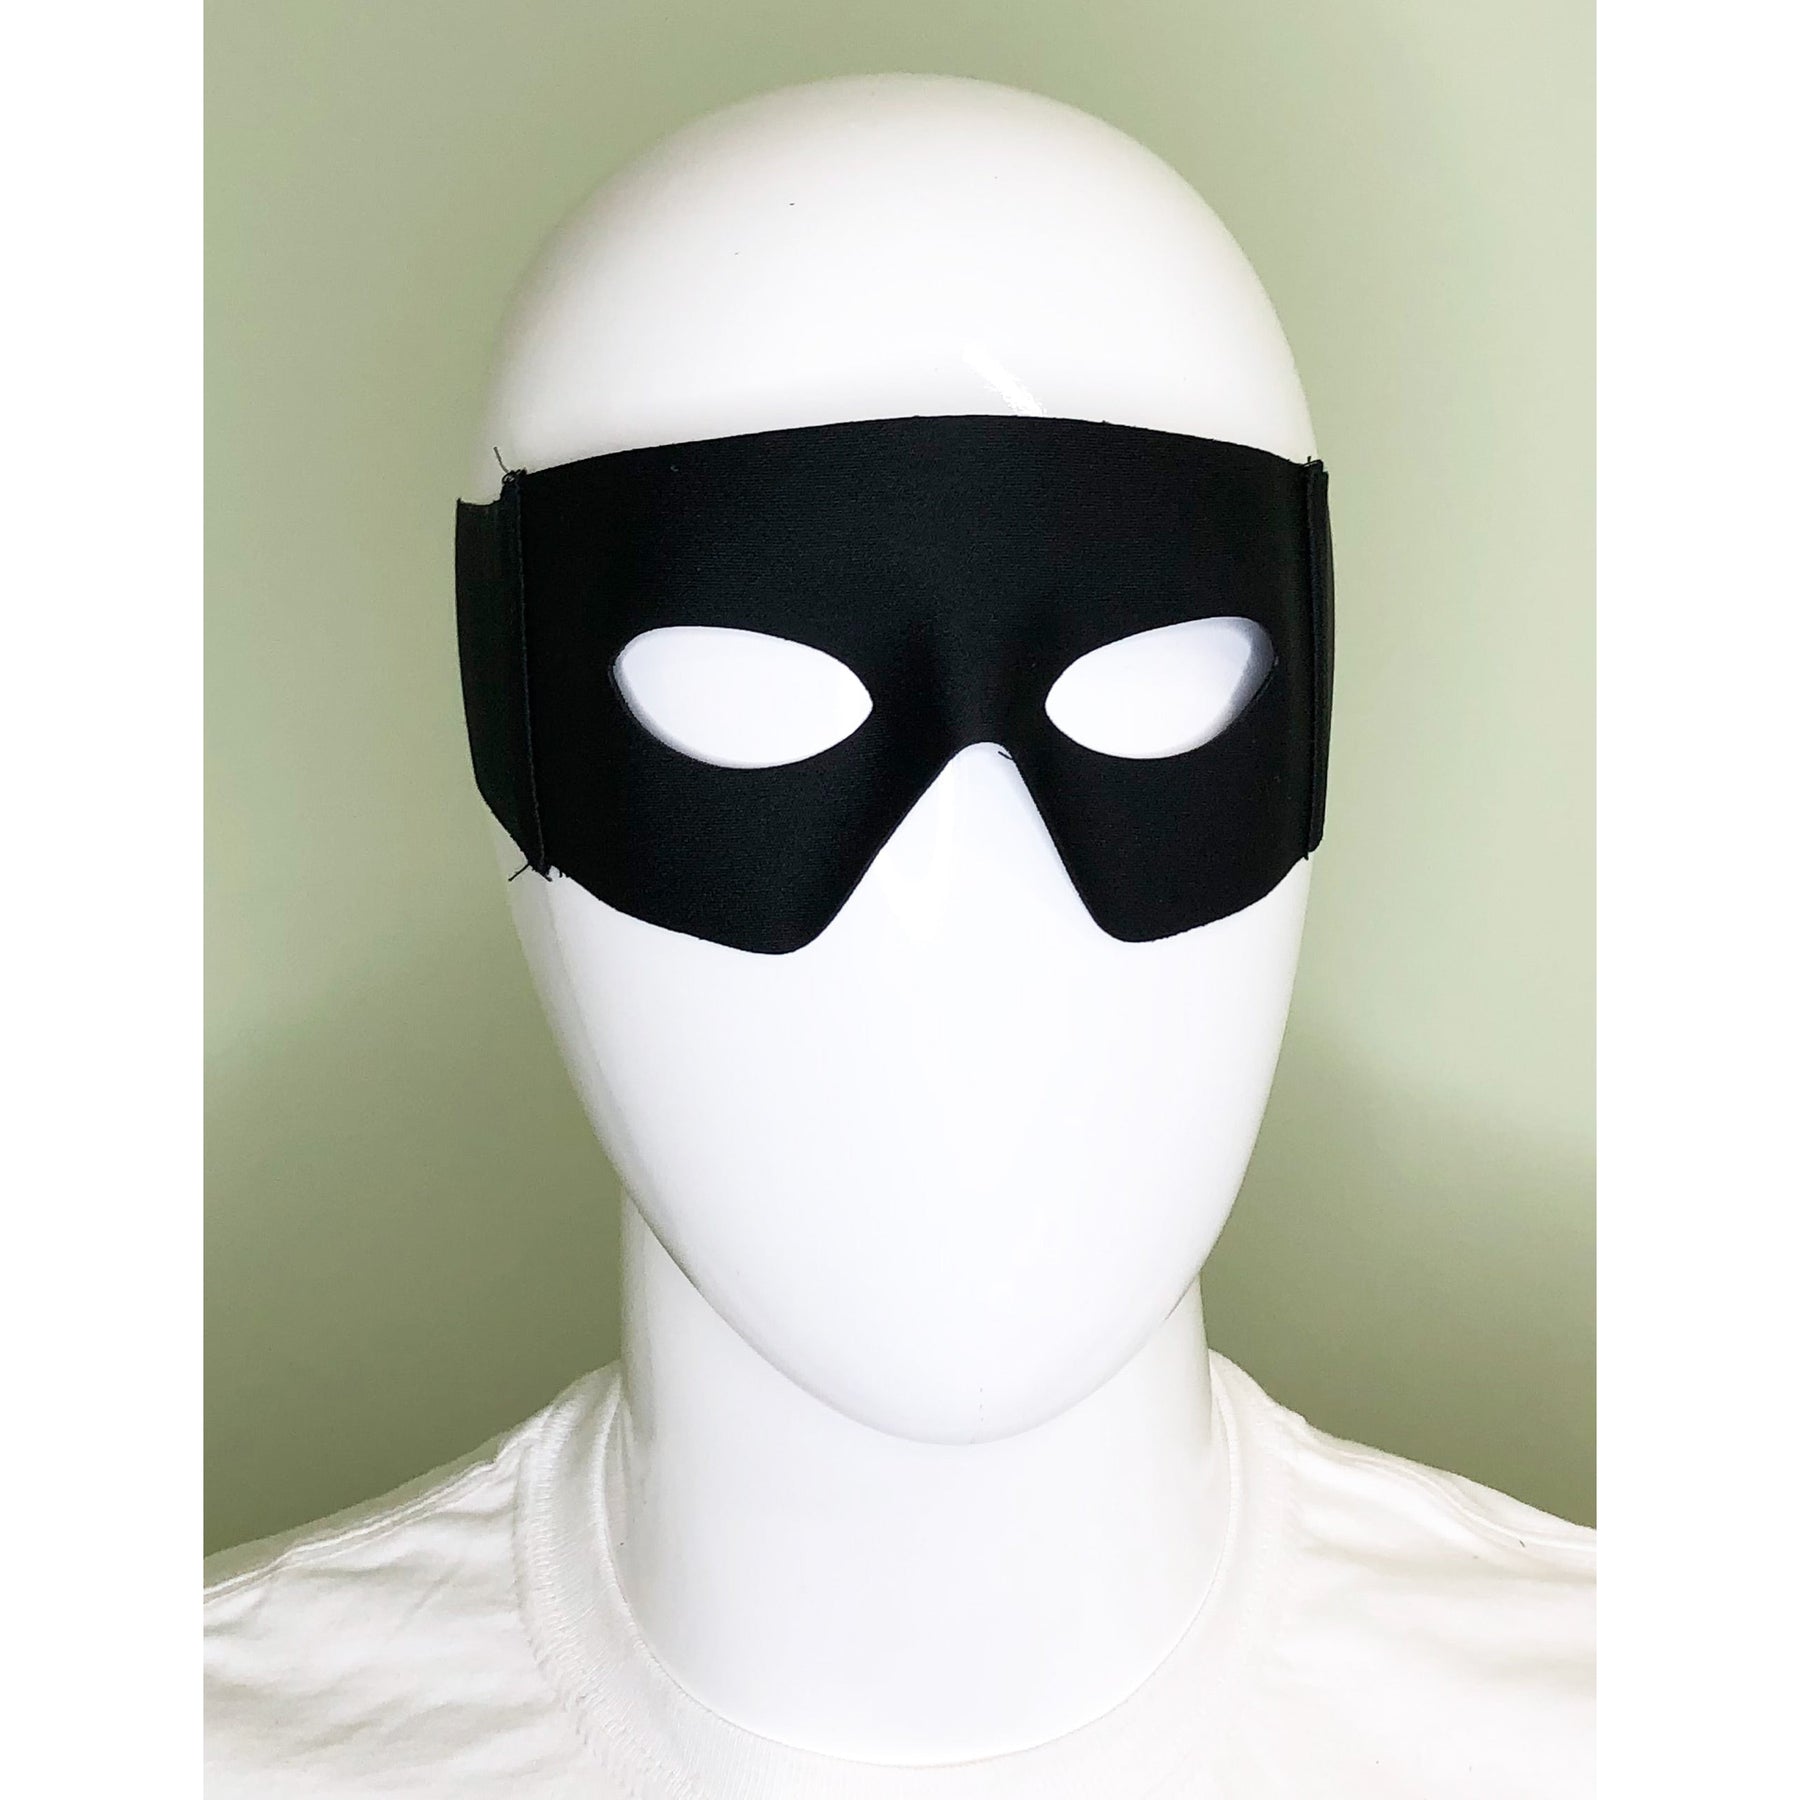 Zorro mask 